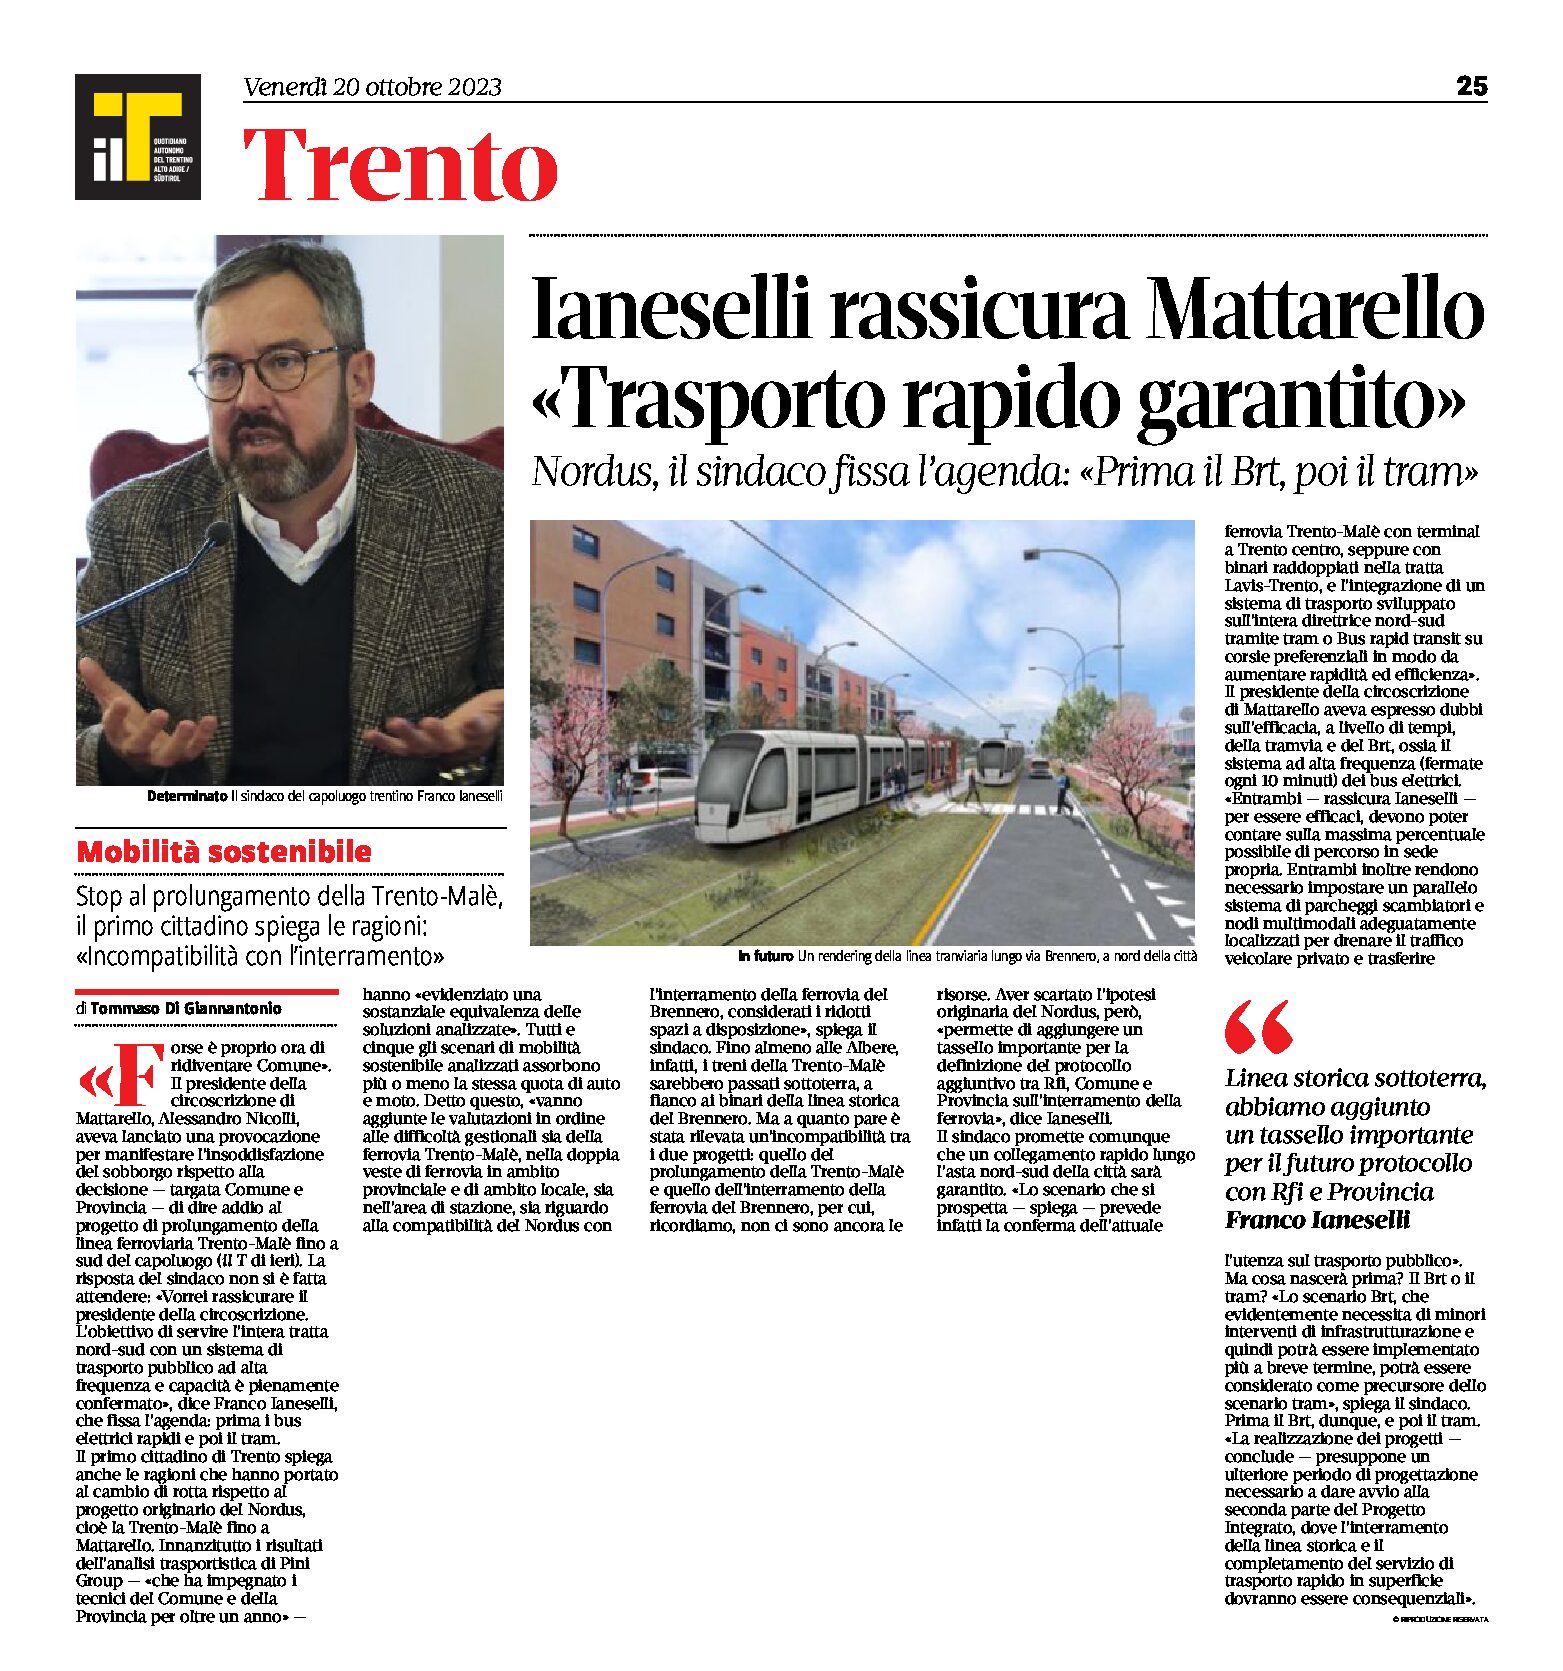 Trento: Ianeselli rassicura Mattarello “trasporto rapido garantito, prima i Brt poi i tram”